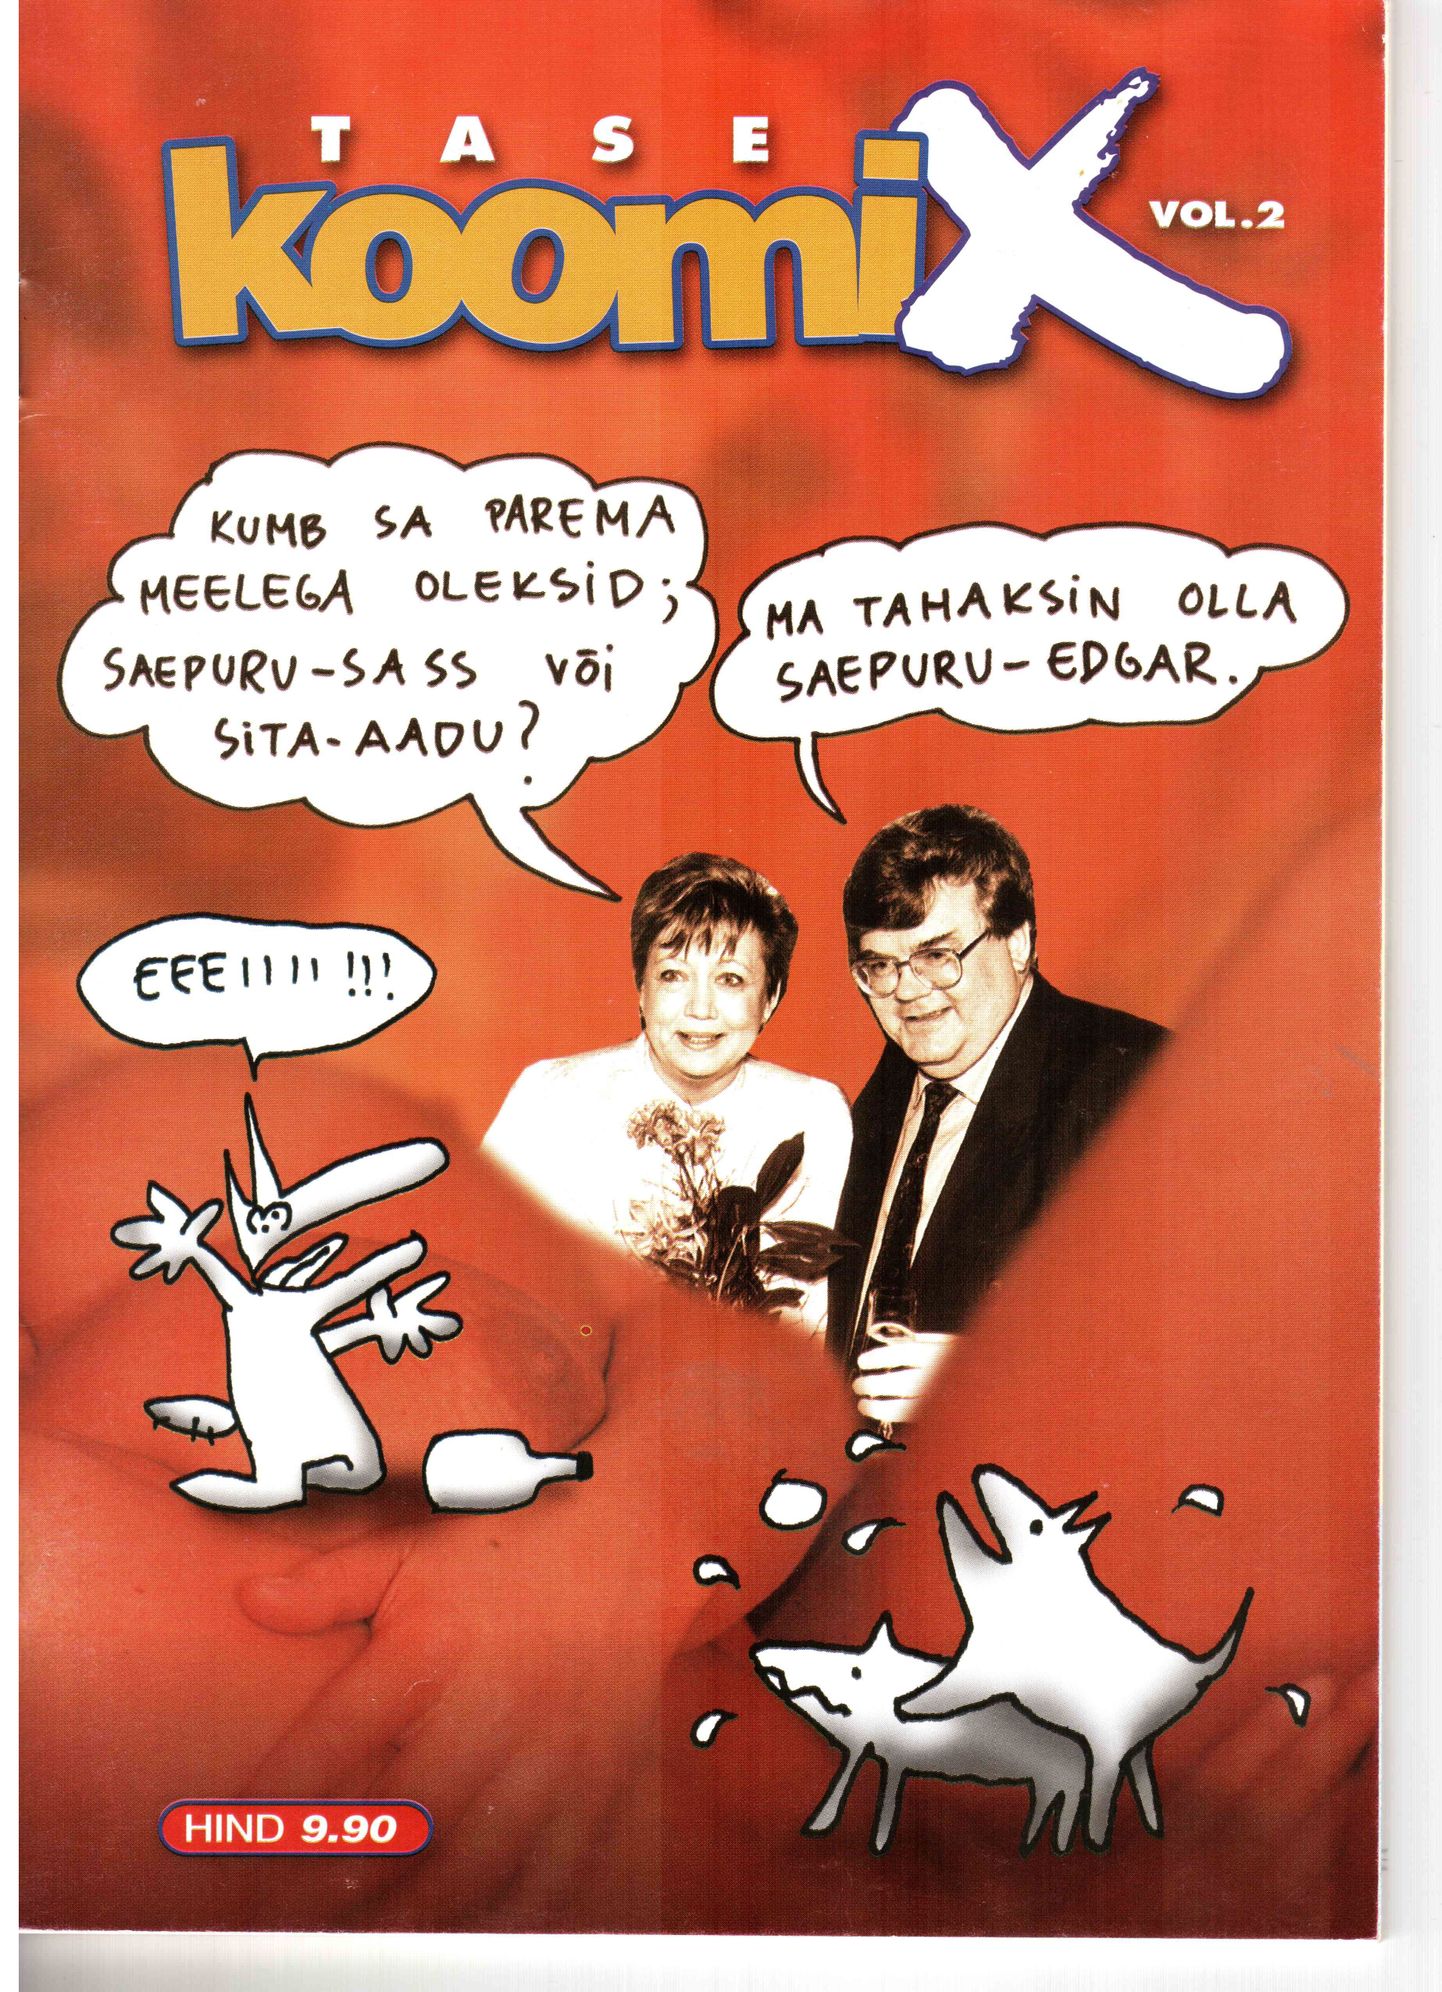 Выпуск эстонского журнала «Tase. Koomix», где на обложке красовалась реклама TV3.